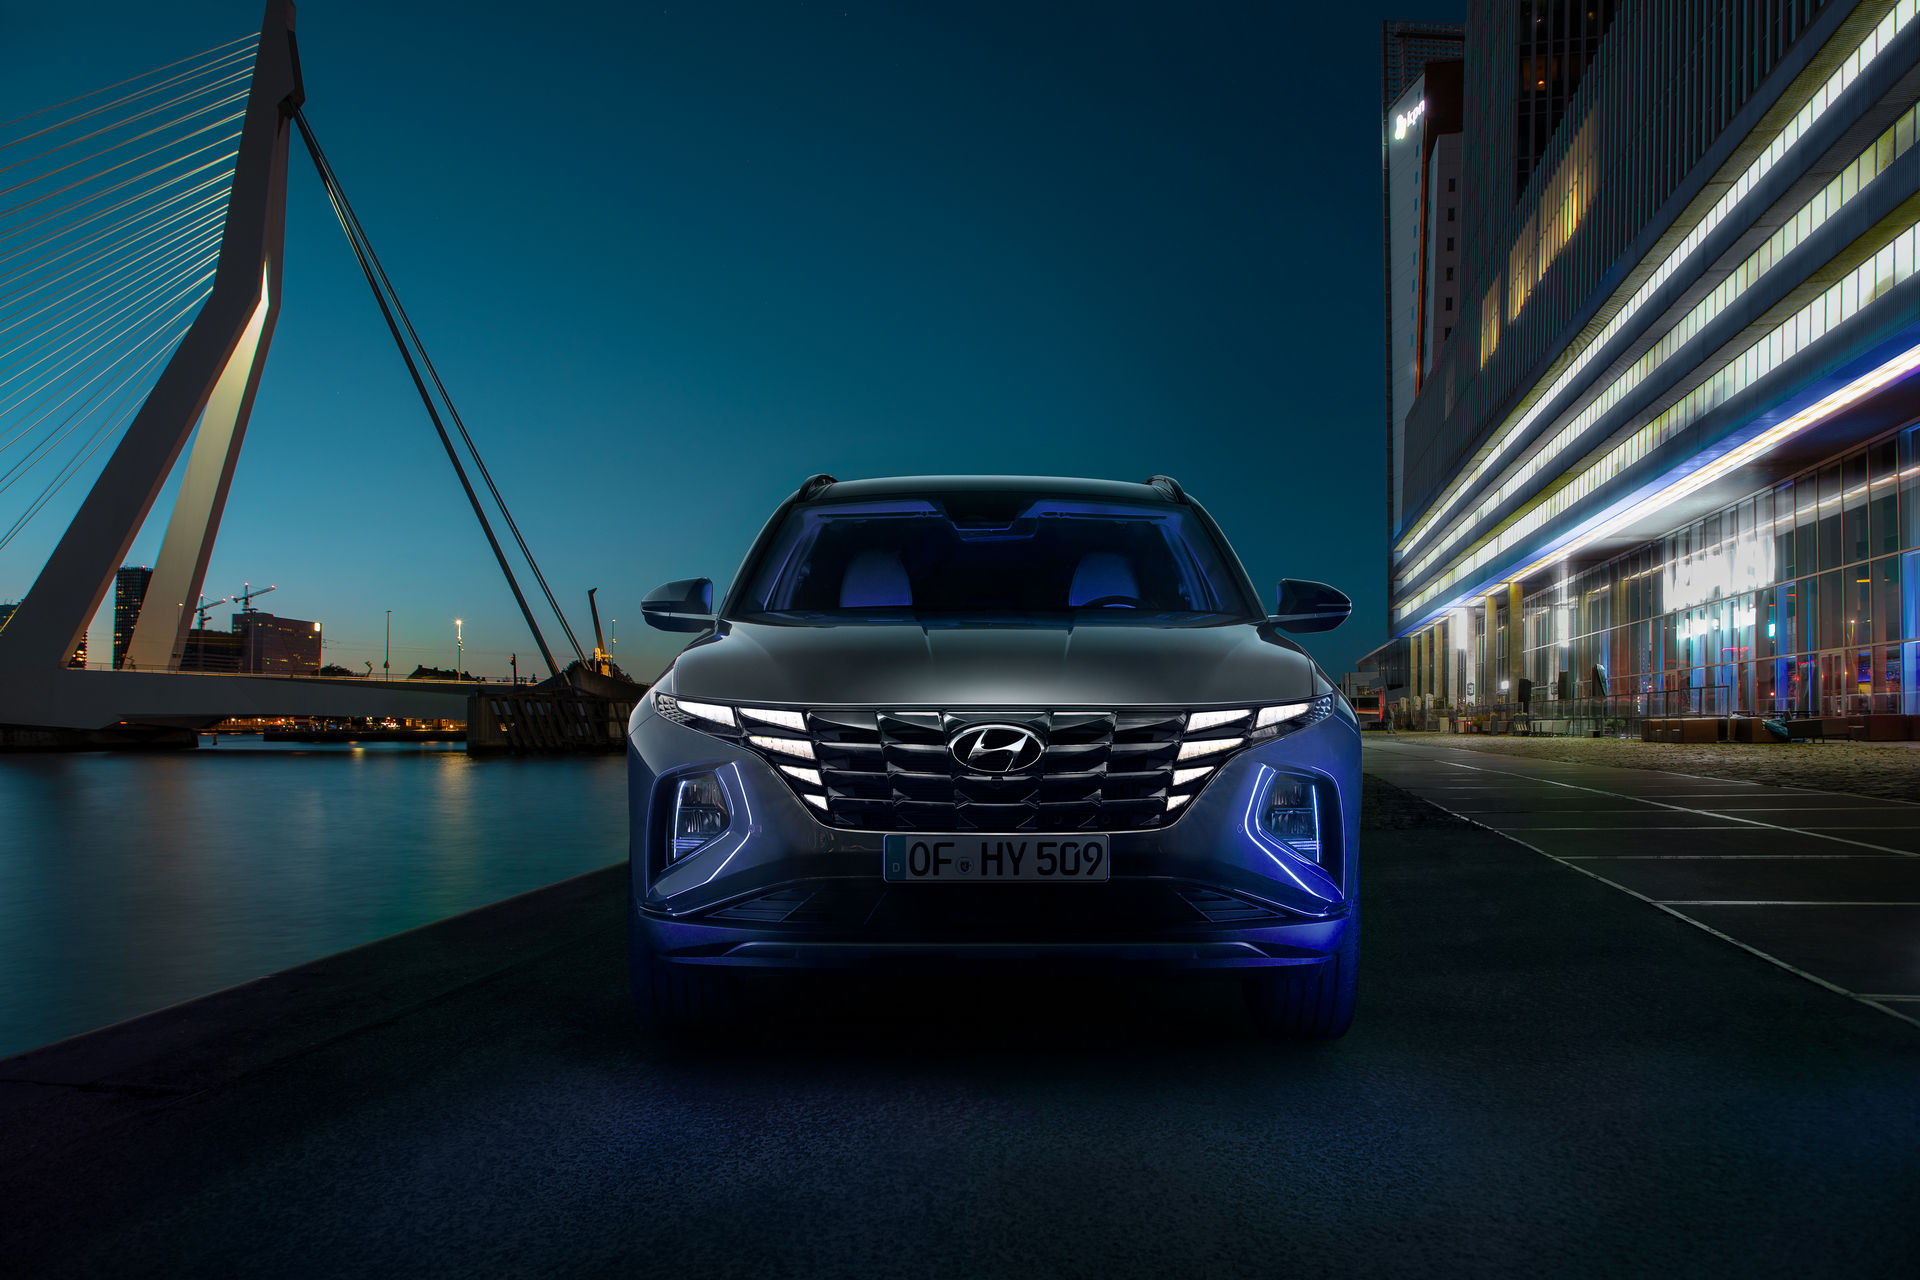 Le nouveau Hyundai Tucson arrivera l'année prochaine en version hybride rechargeable